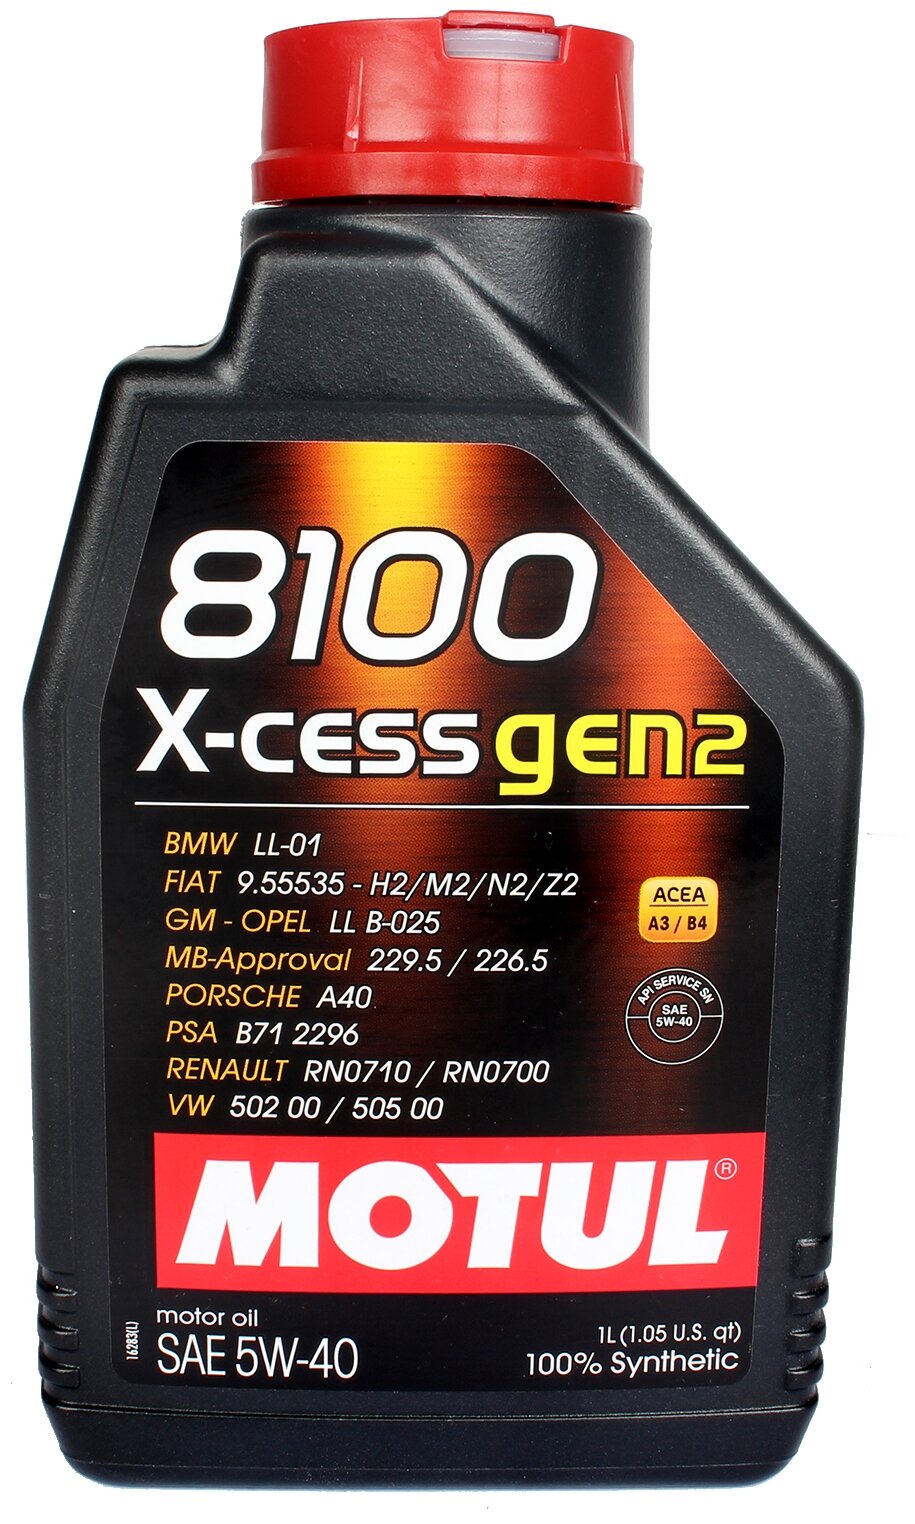 Синтетическое моторное масло Motul 8100 X-cess GEN2 5W40